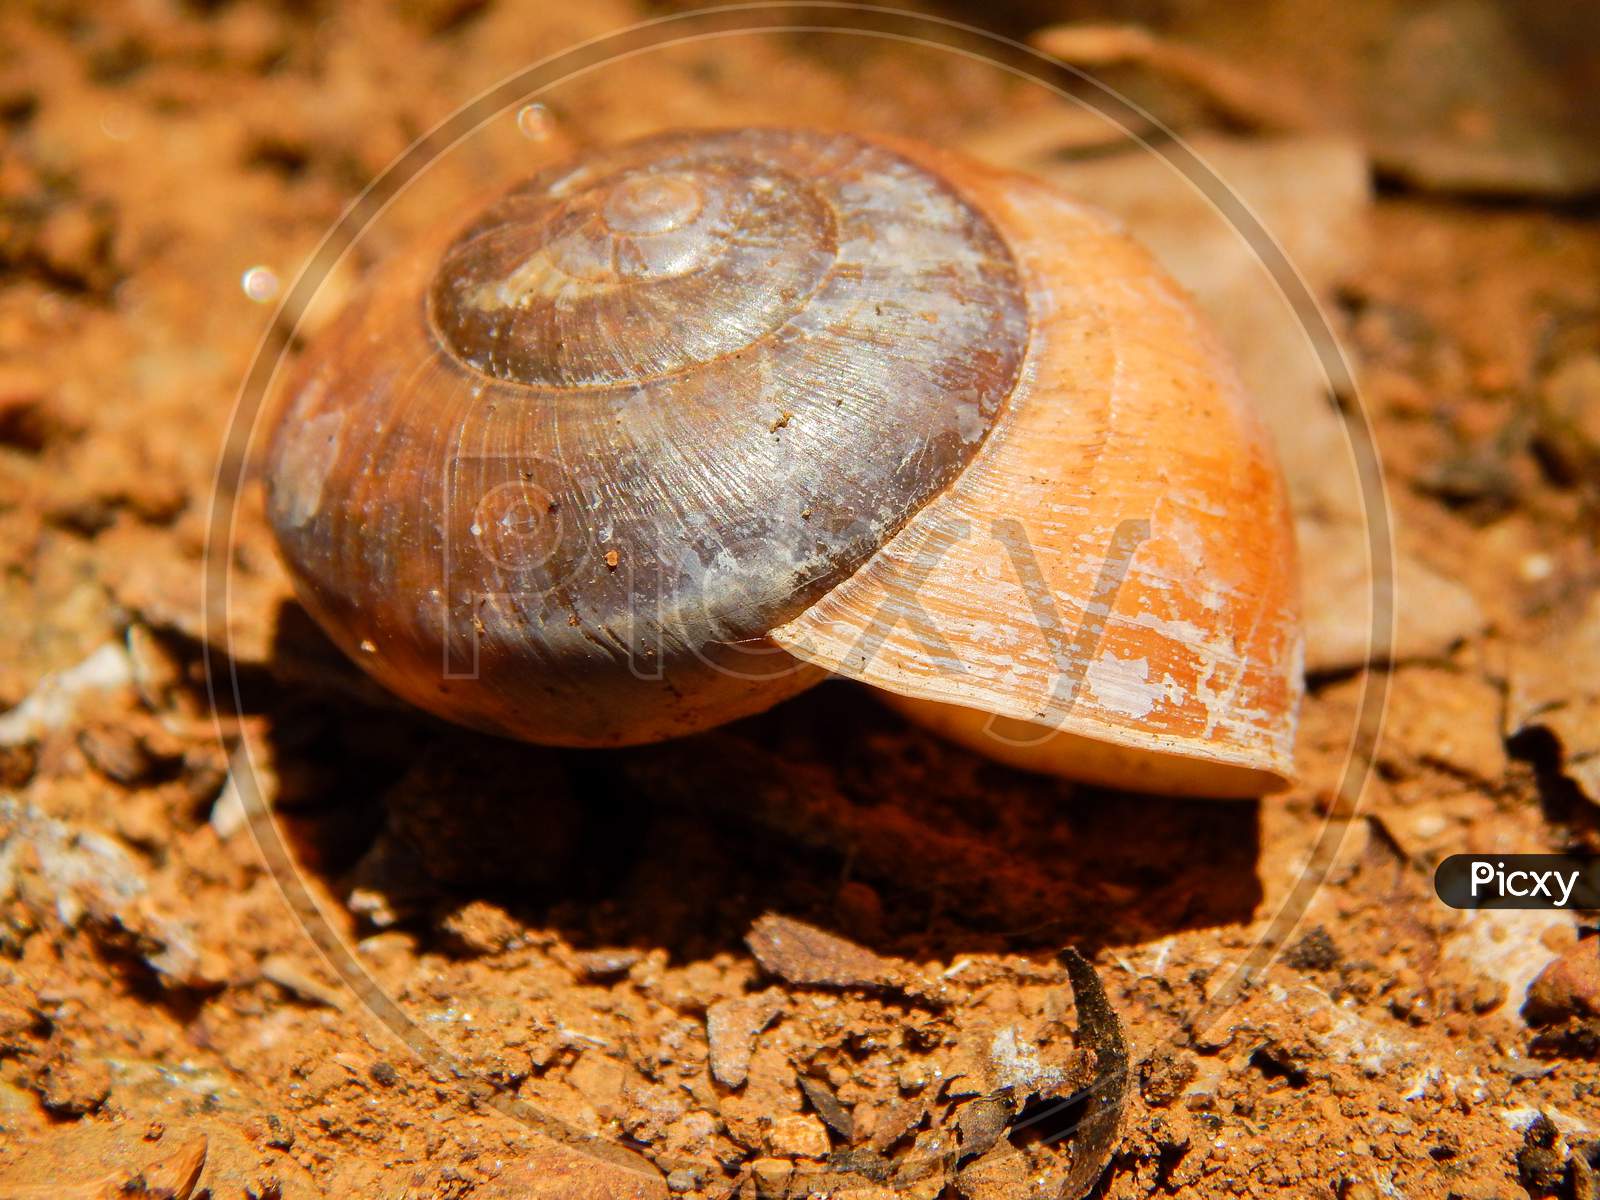 A empty snail shell in red soil